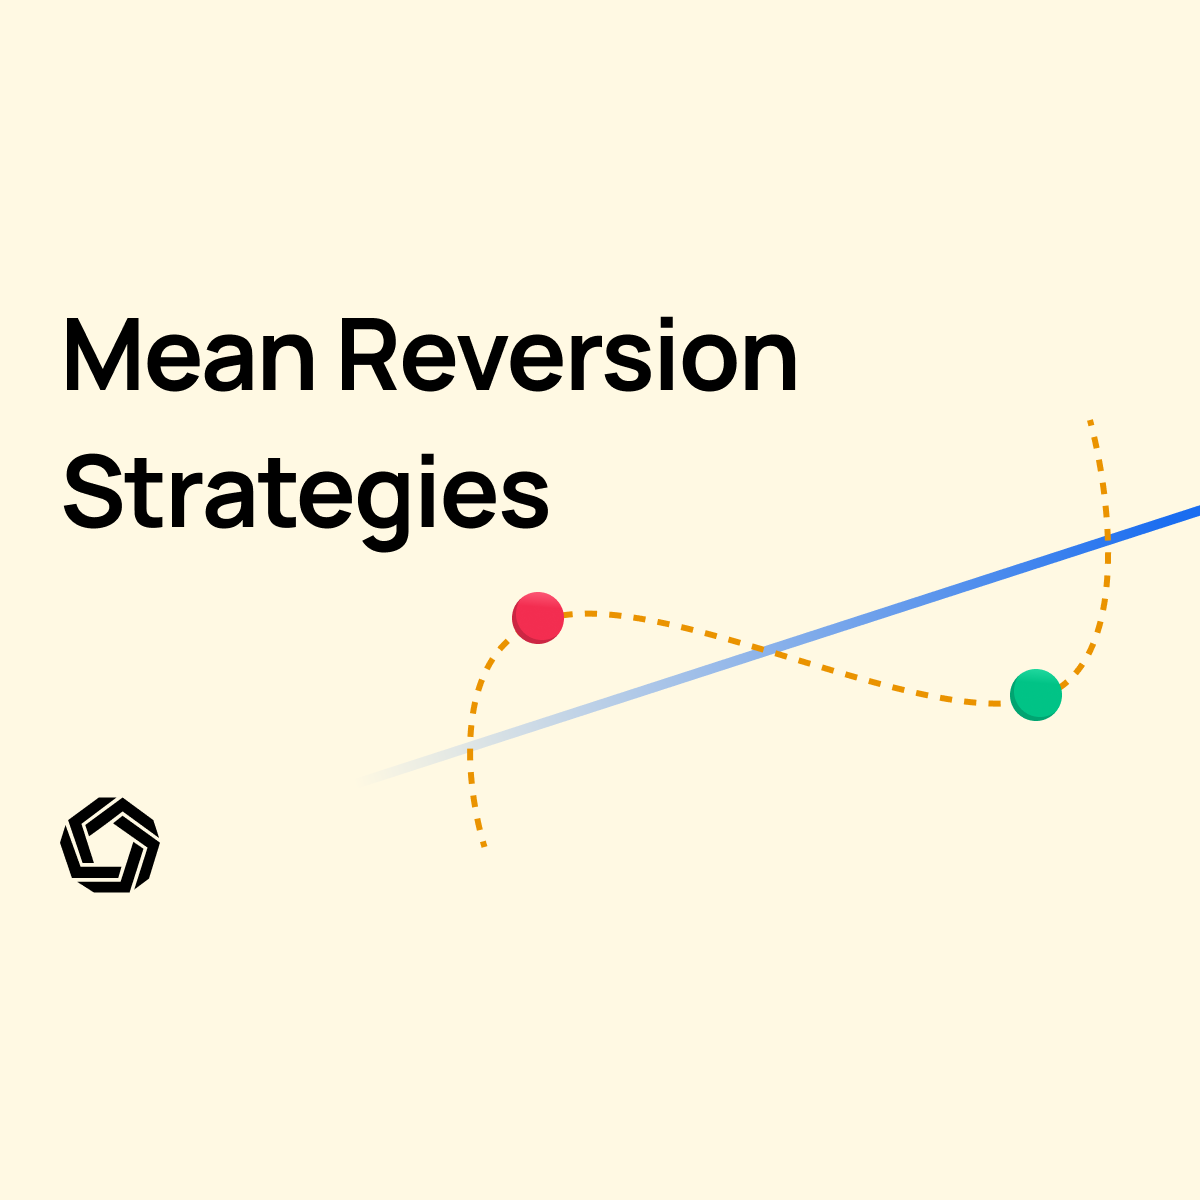 Mean Reversion Strategies